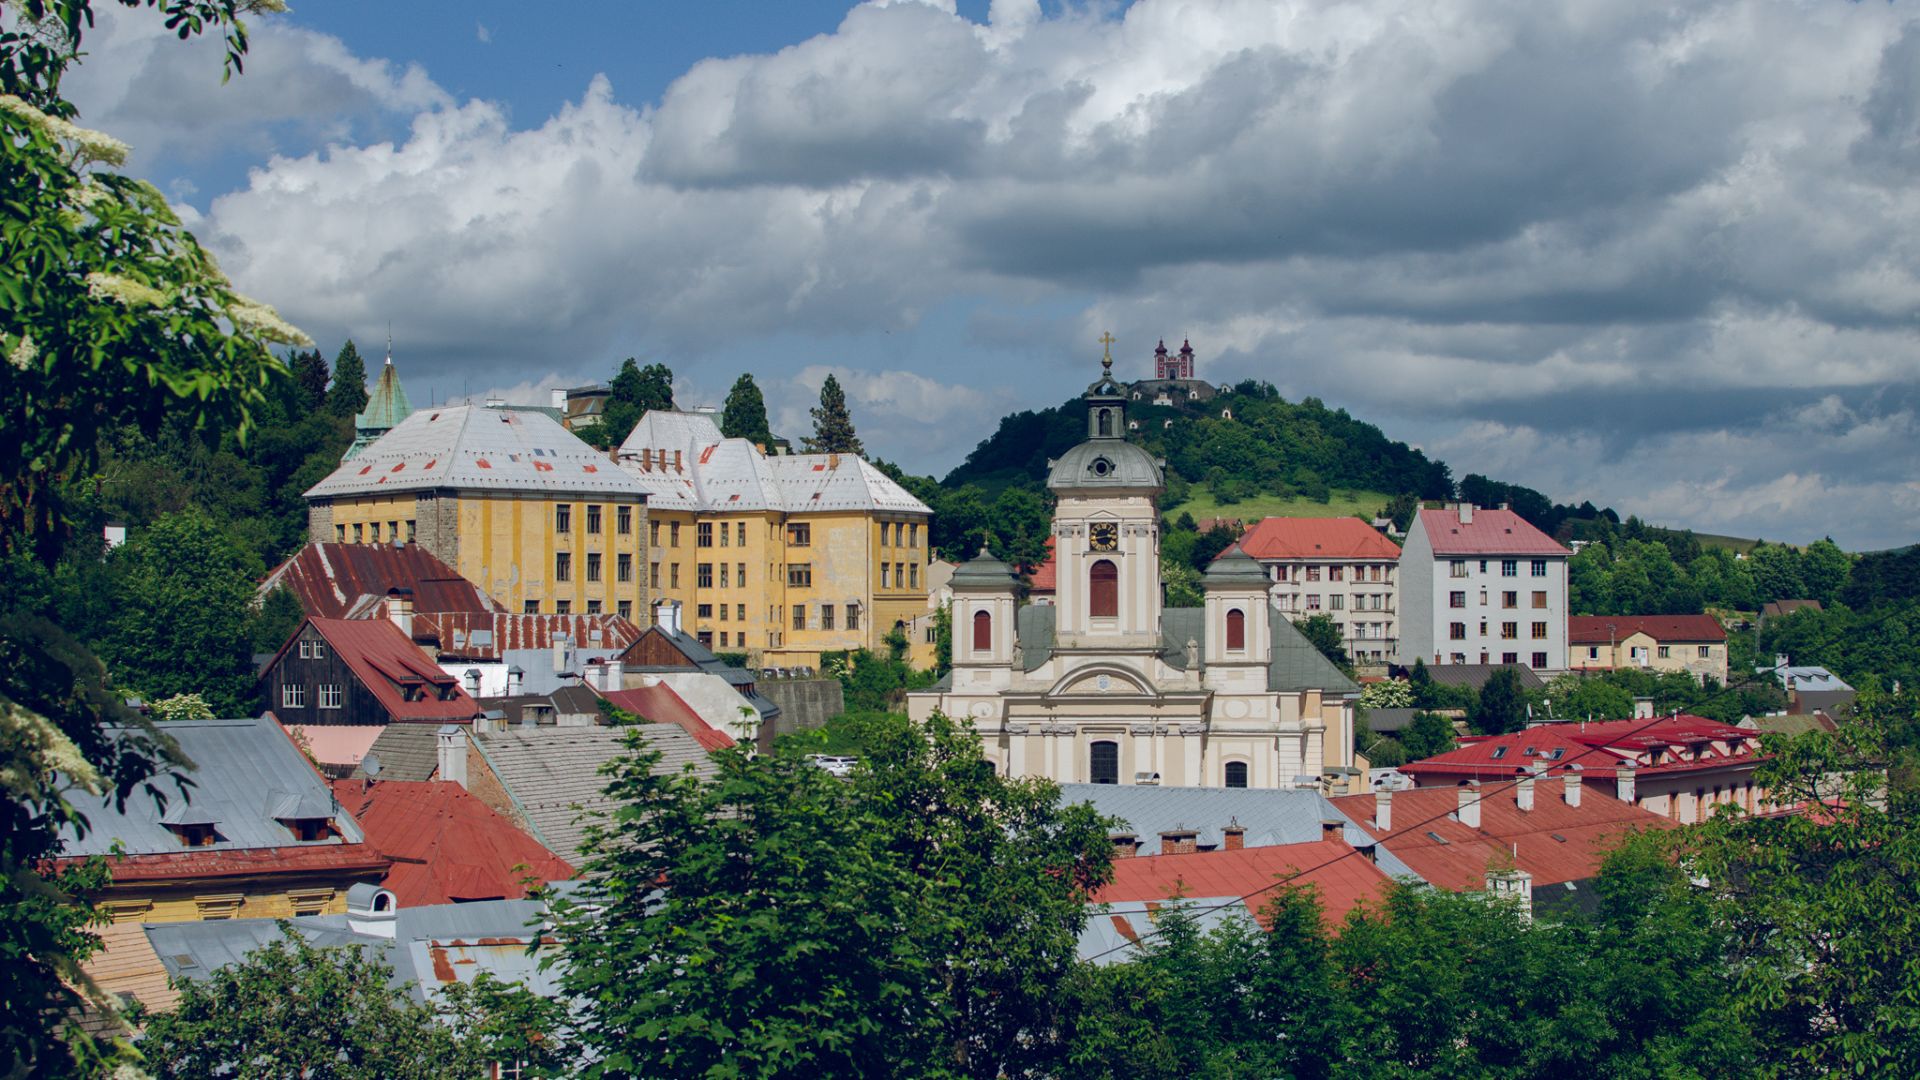 Szlovákia királyi bányavárosai: Selmecbányától Breznóbányáig